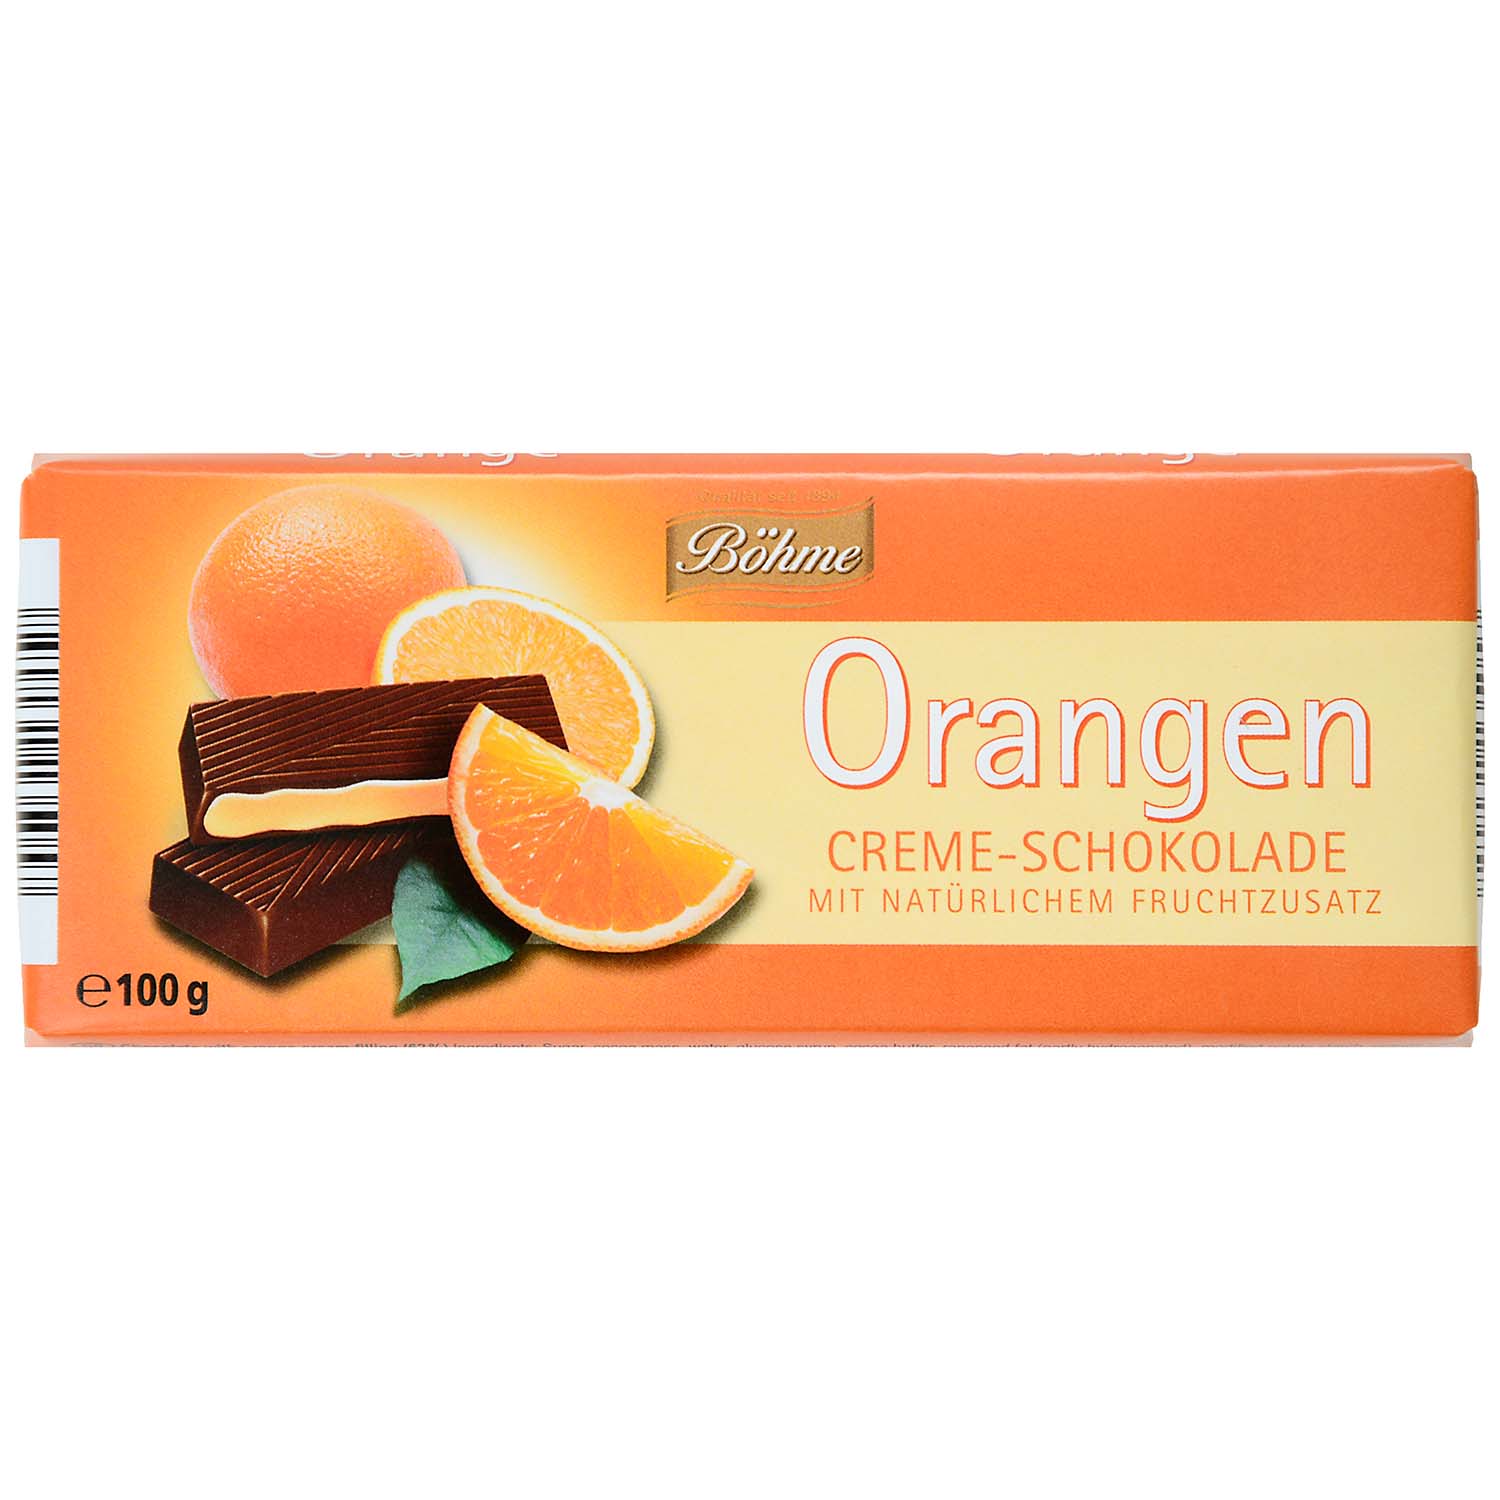 Böhme Orangen Creme-Schokolade 100g | Online kaufen im World of Sweets Shop